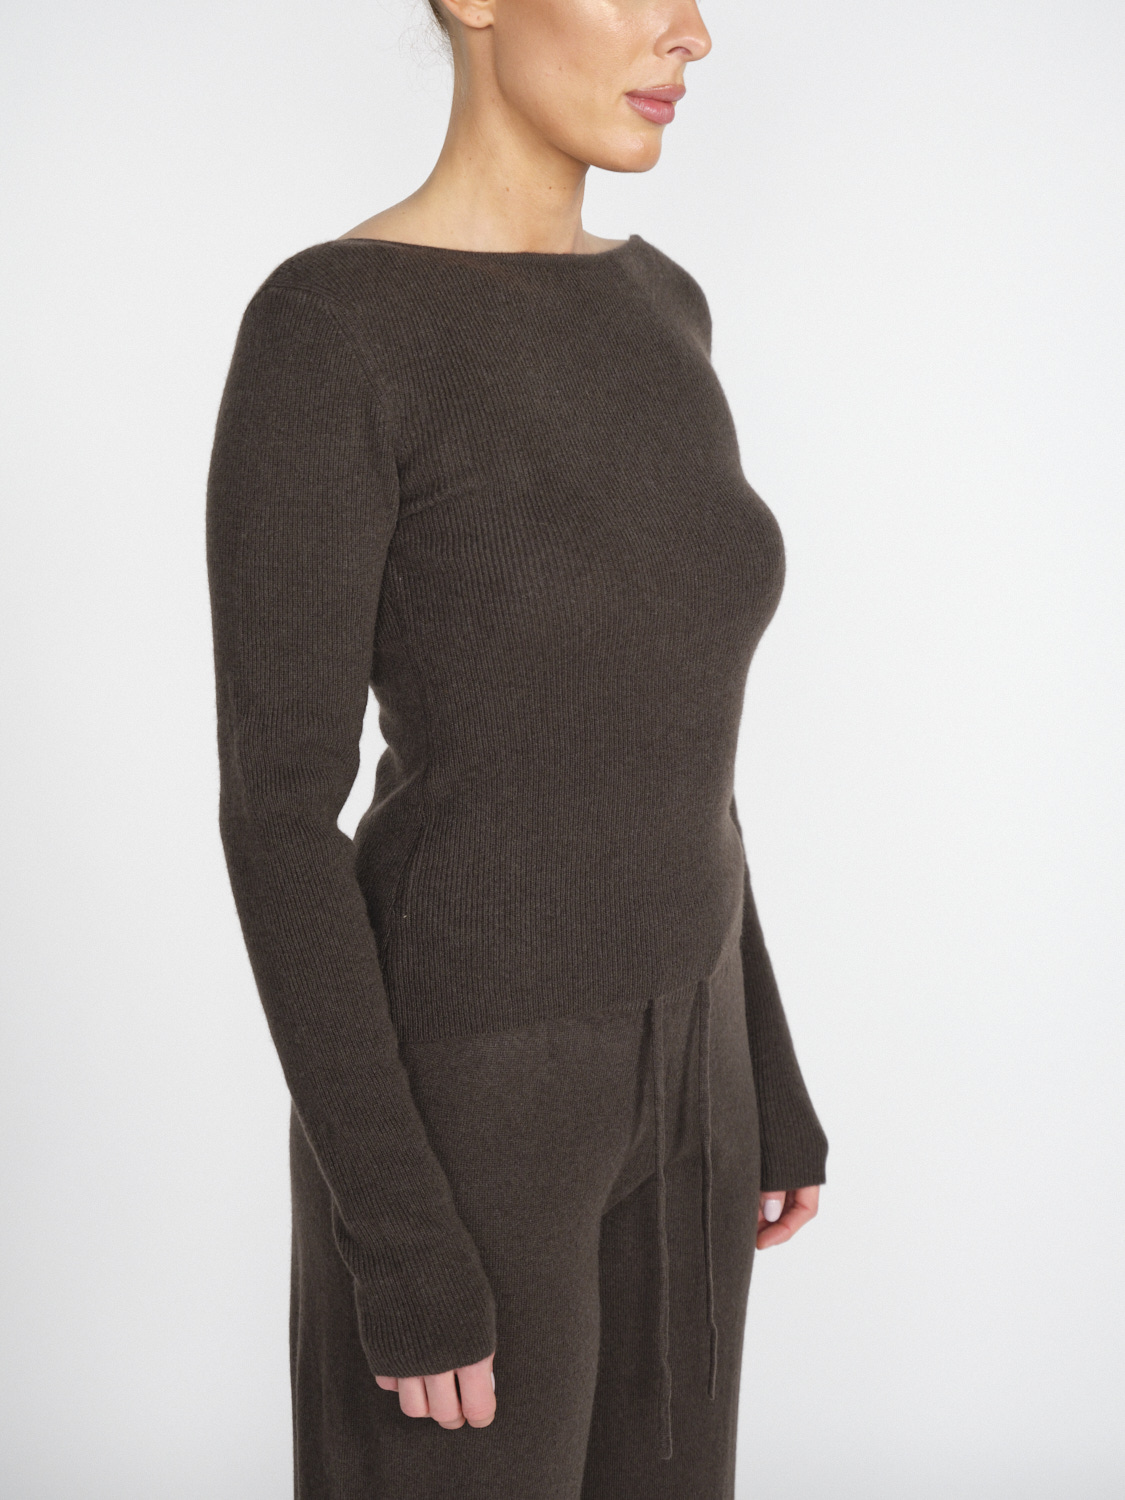 Lisa Yang Juliette - Cashmere jumper with large back neckline  brown XS/S